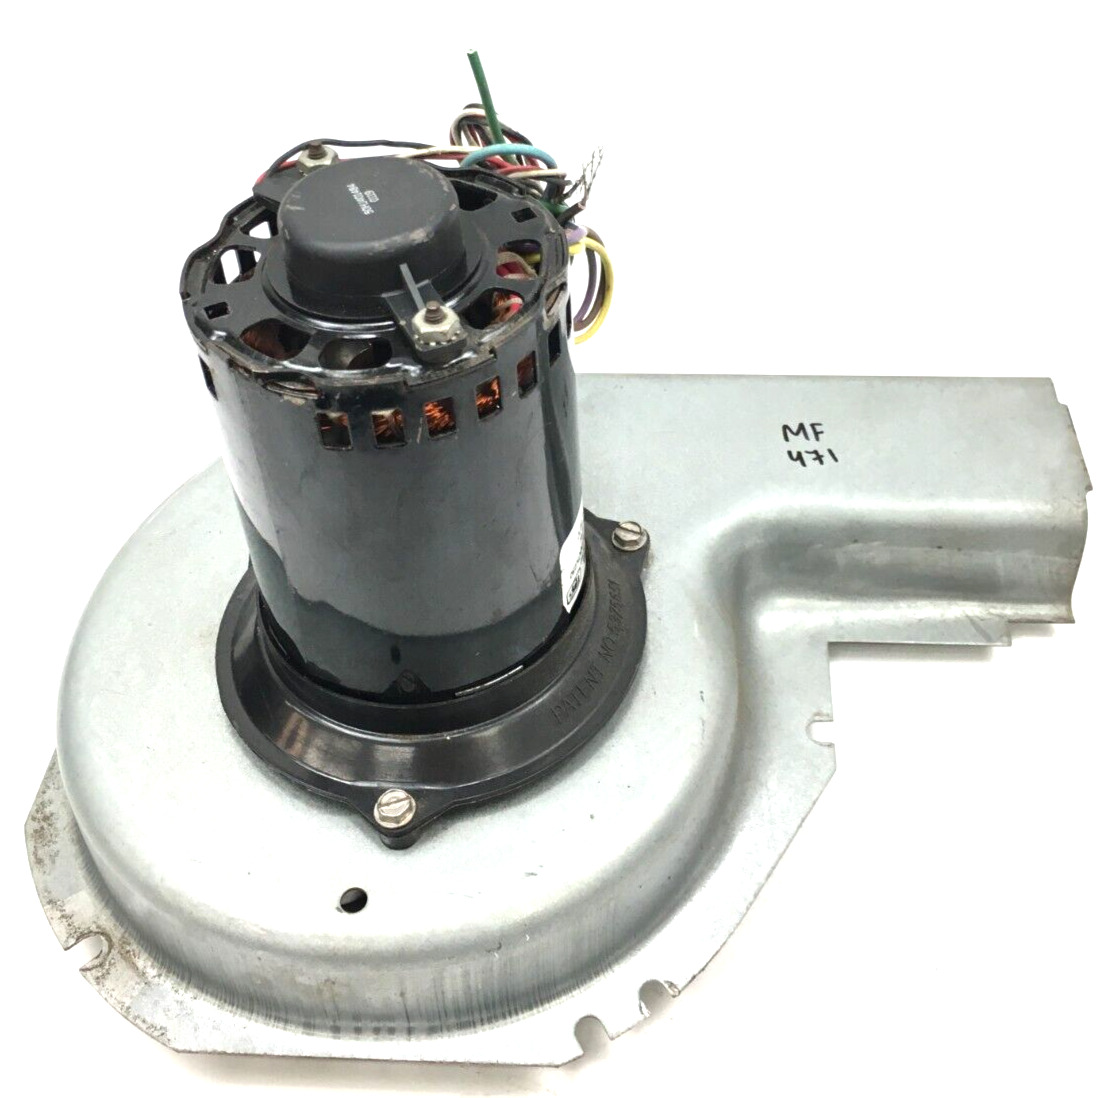 Magnetek JF1H112N Inducer Blower Motor Assembly HC30CK230 208/230V used #MF471